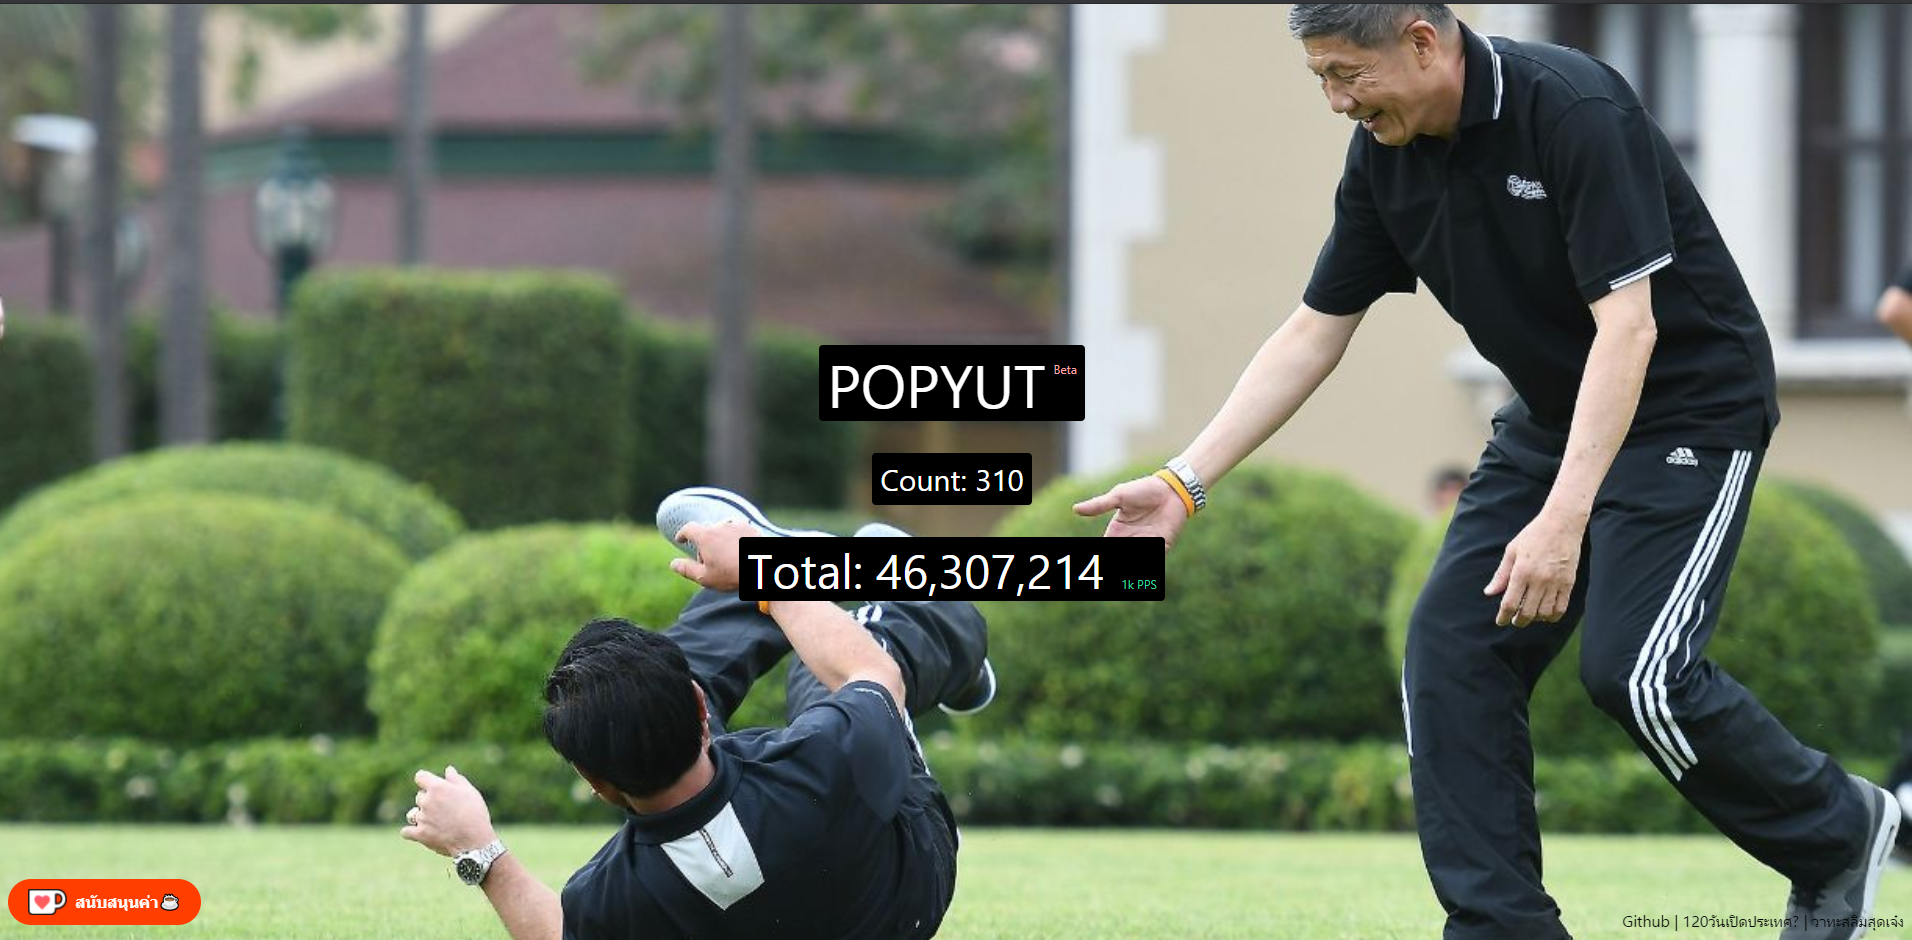 ญฯญํ๊ธ | POPYUT | มาแทน POPCAT กับเกมกดท่านผู้นำใน POPYUT! ของใหม่คนไทยทำ!